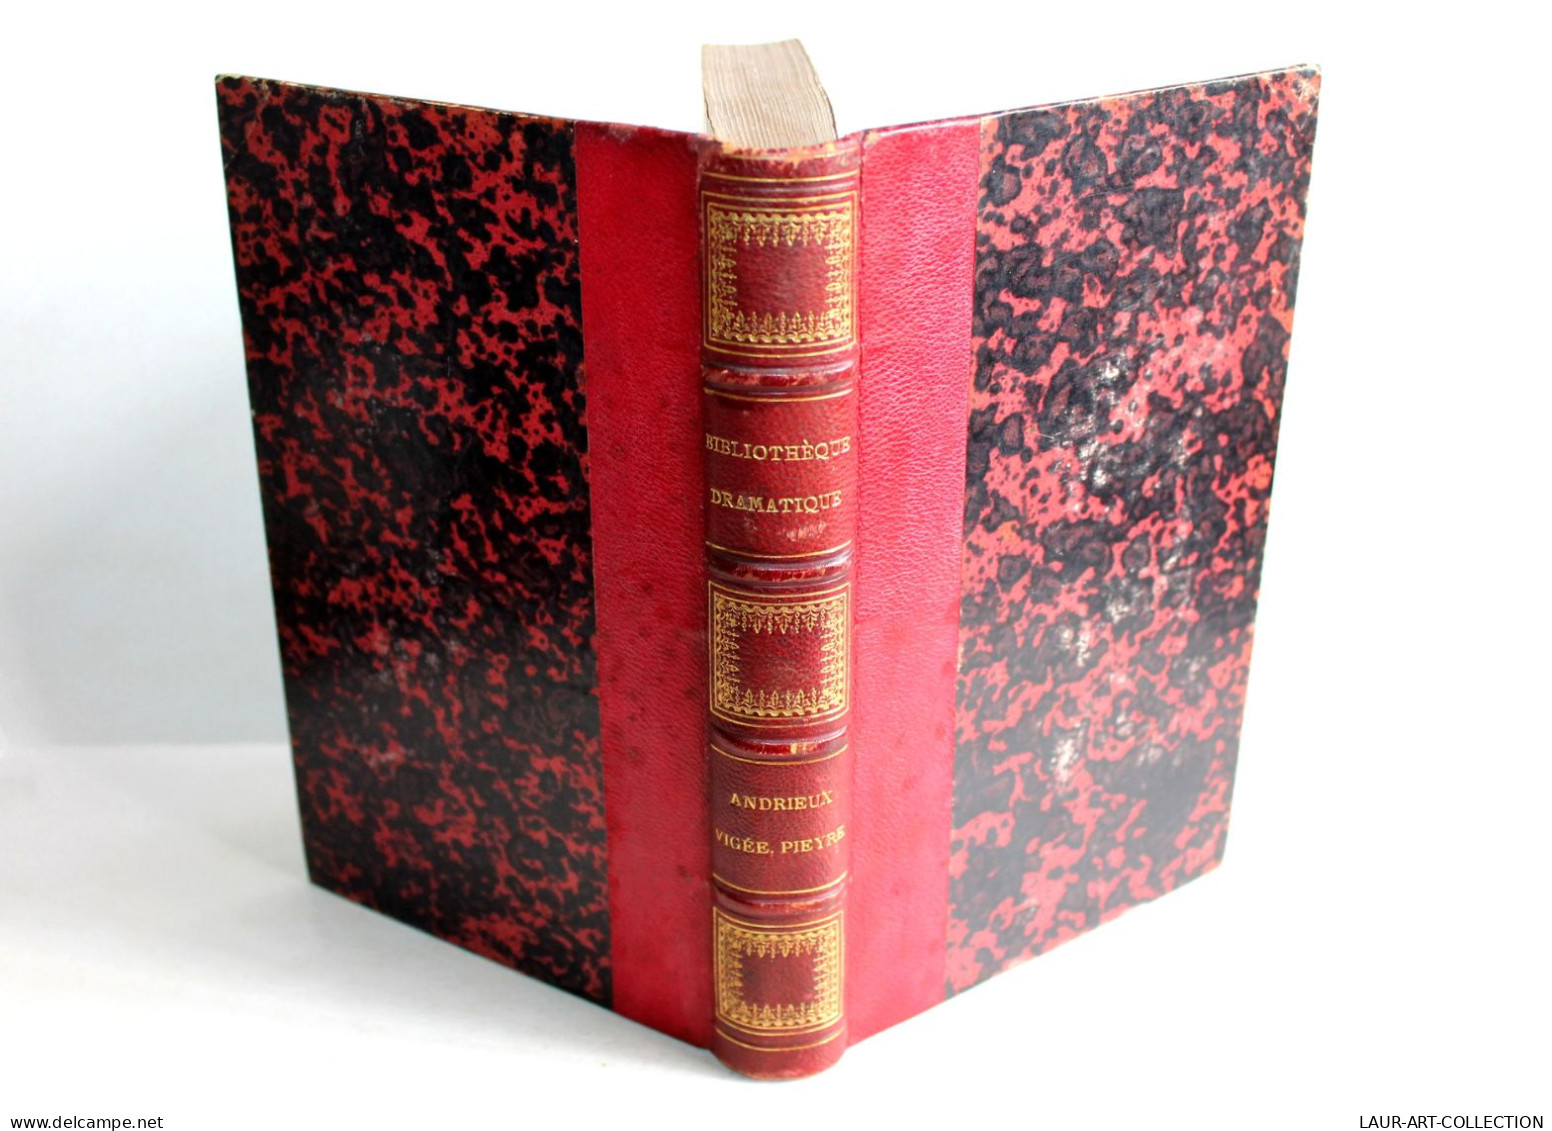 BIBLIOTHEQUE DRAMATIQUE Ou REPERTOIRE UNIVERSEL THEATRE FRANCAIS Par NODIER 1824 / ANCIEN LIVRE XIXe SIECLE (1803.163) - Autores Franceses